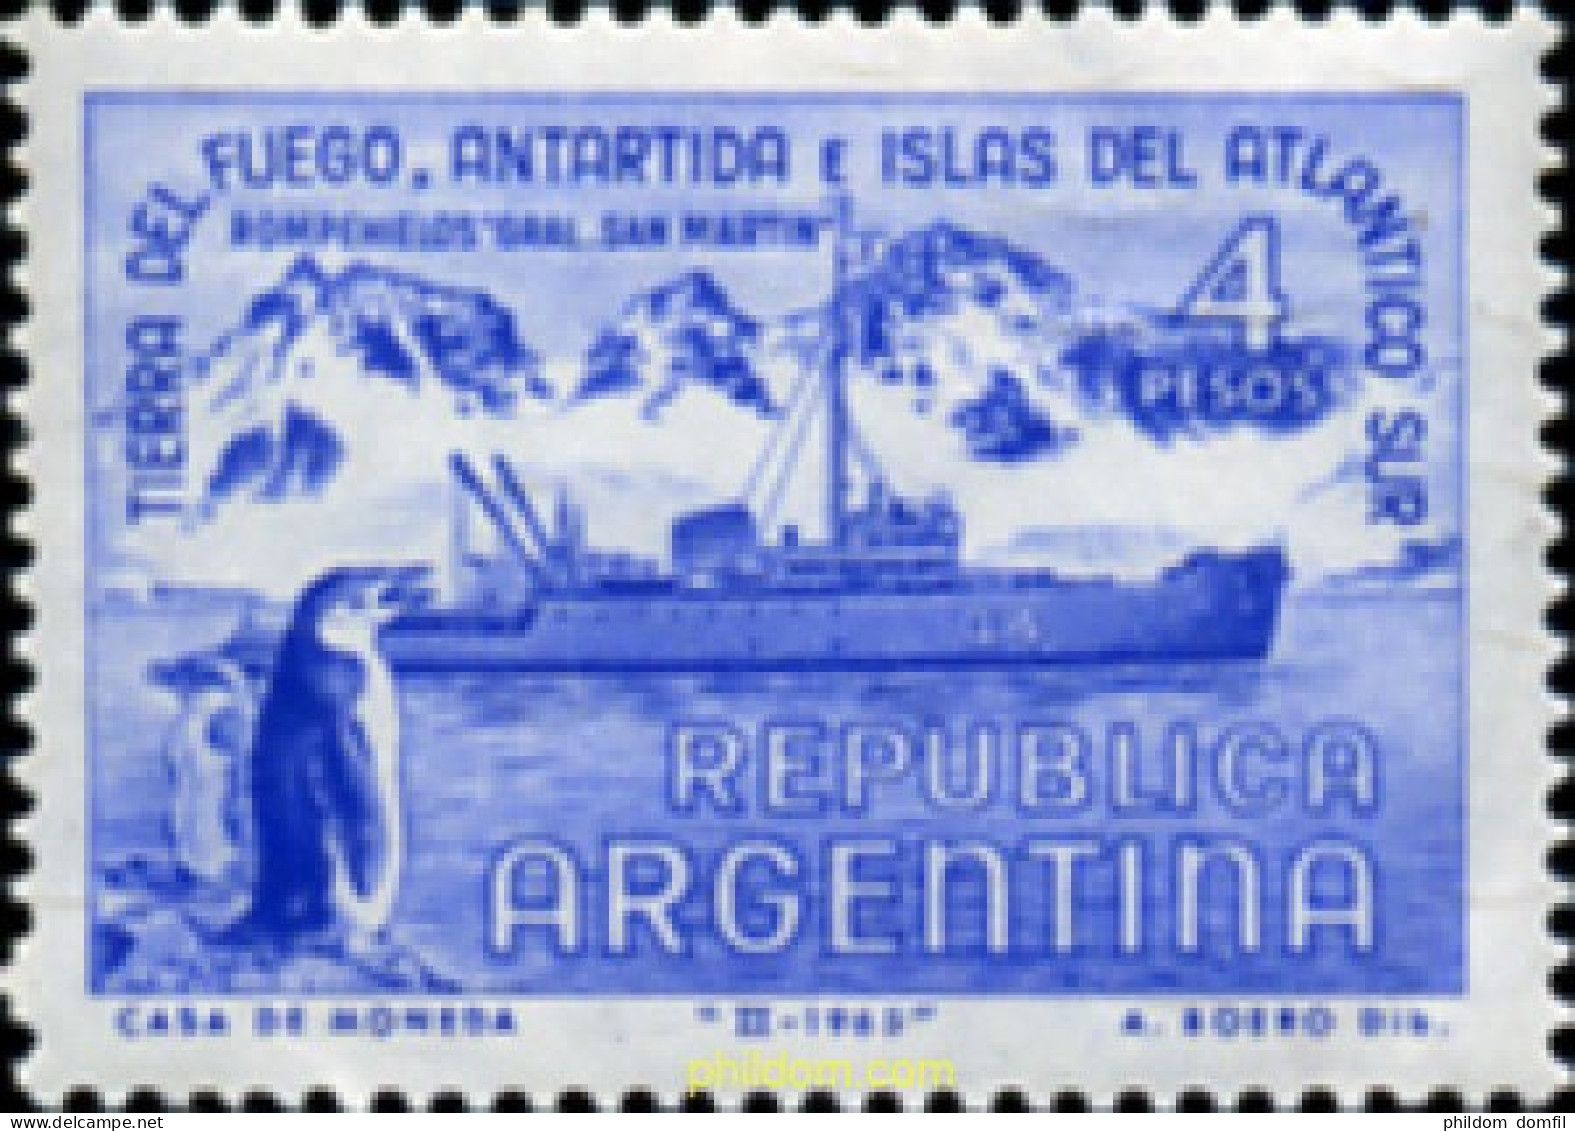 727020 HINGED ARGENTINA 1965 TERRITORIOS ANTARTICOS ARGENTINOS - Neufs